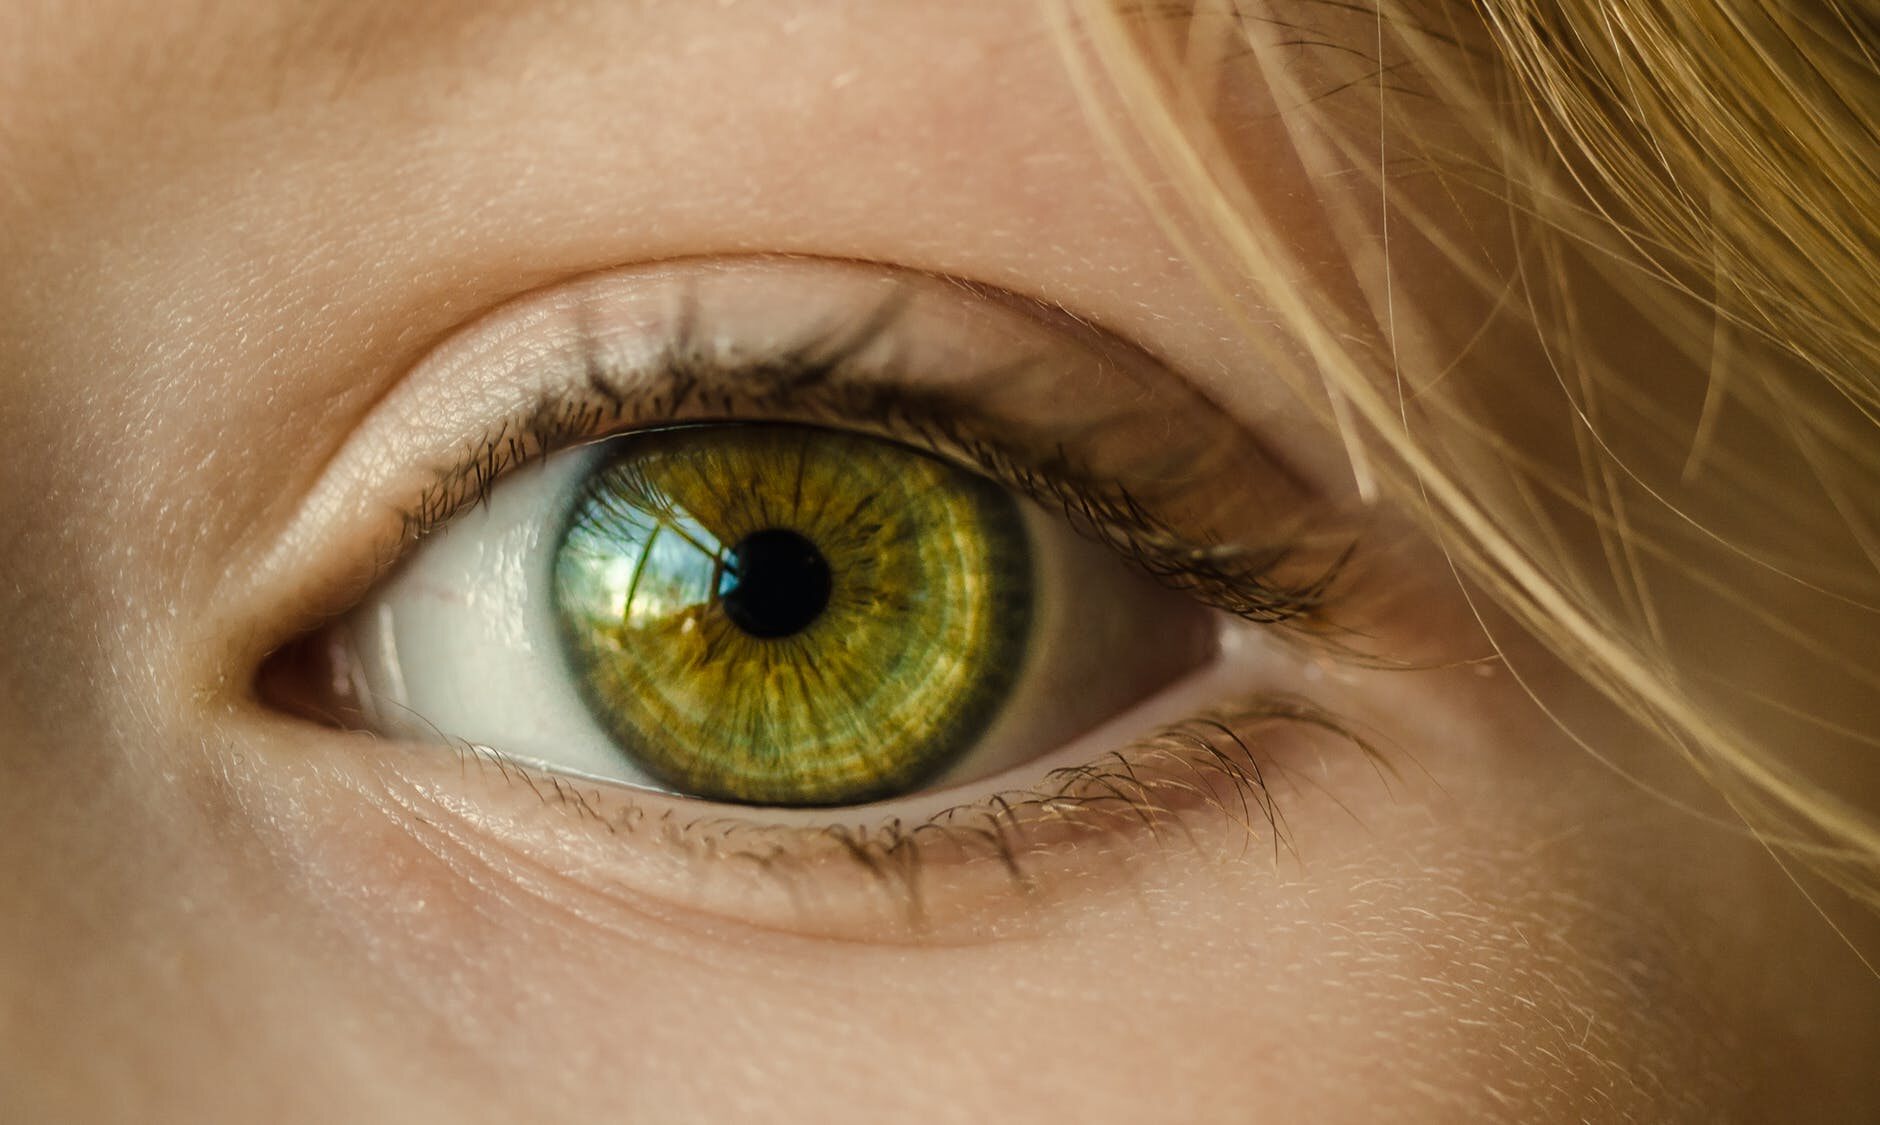 Przez "jej oczy zielone oszalał":